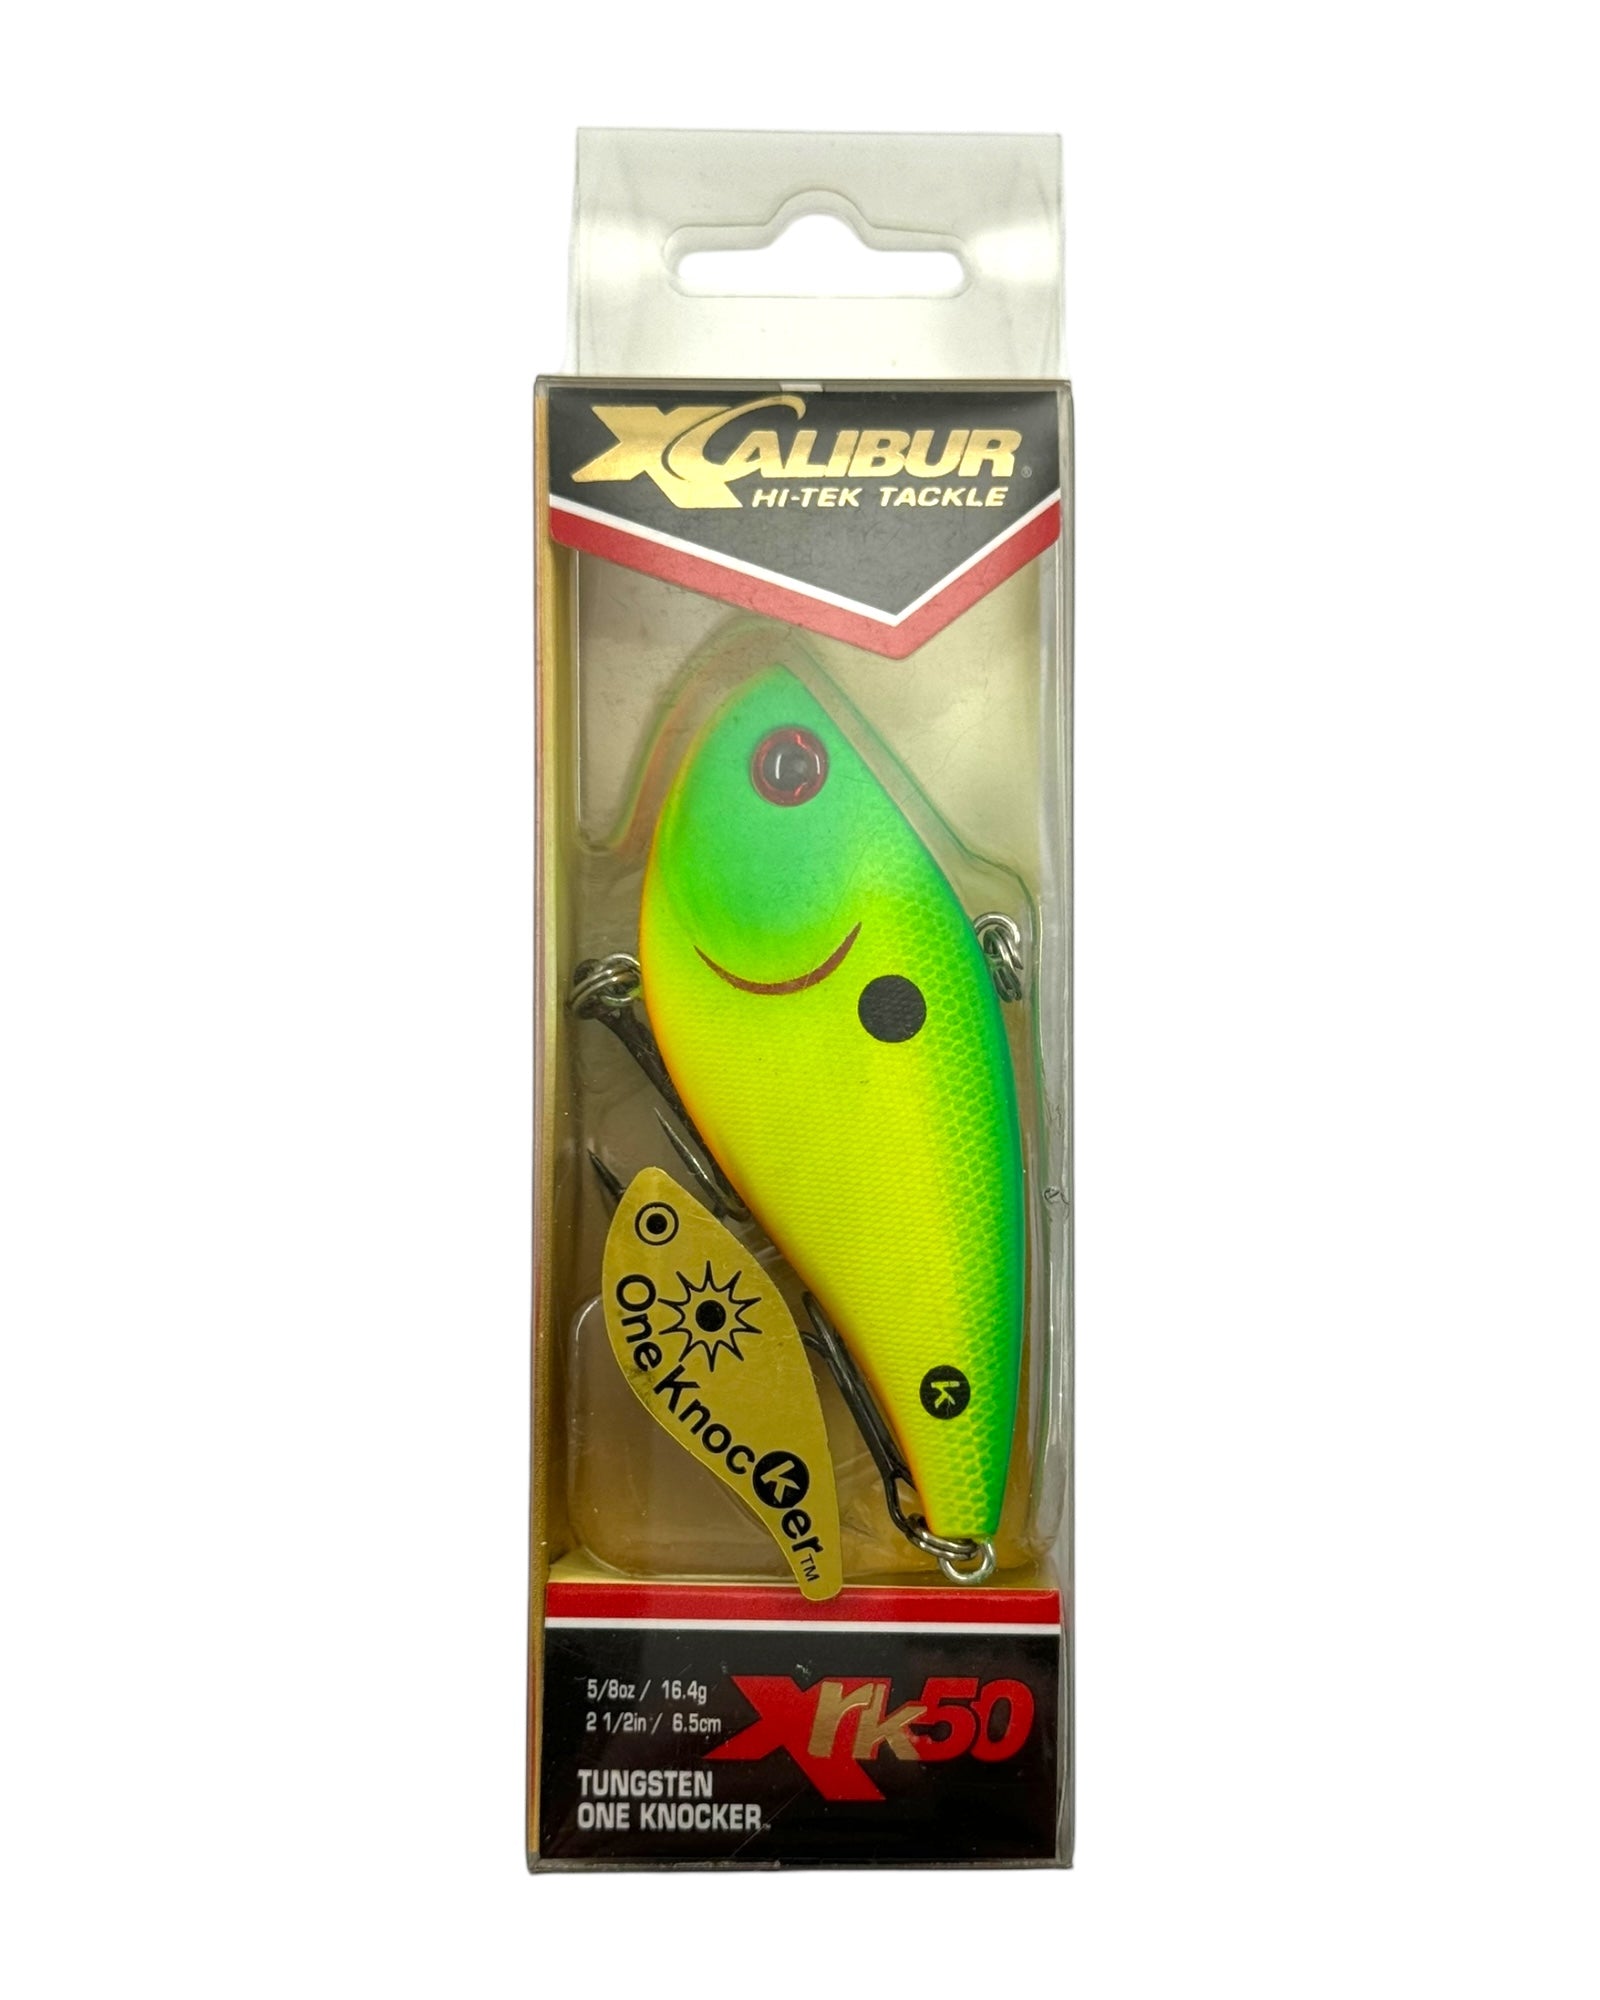 XCALIBUR TUNGSTEN 1 KNOCKER XRK50 Fishing Lure • LEMON LIME – Toad